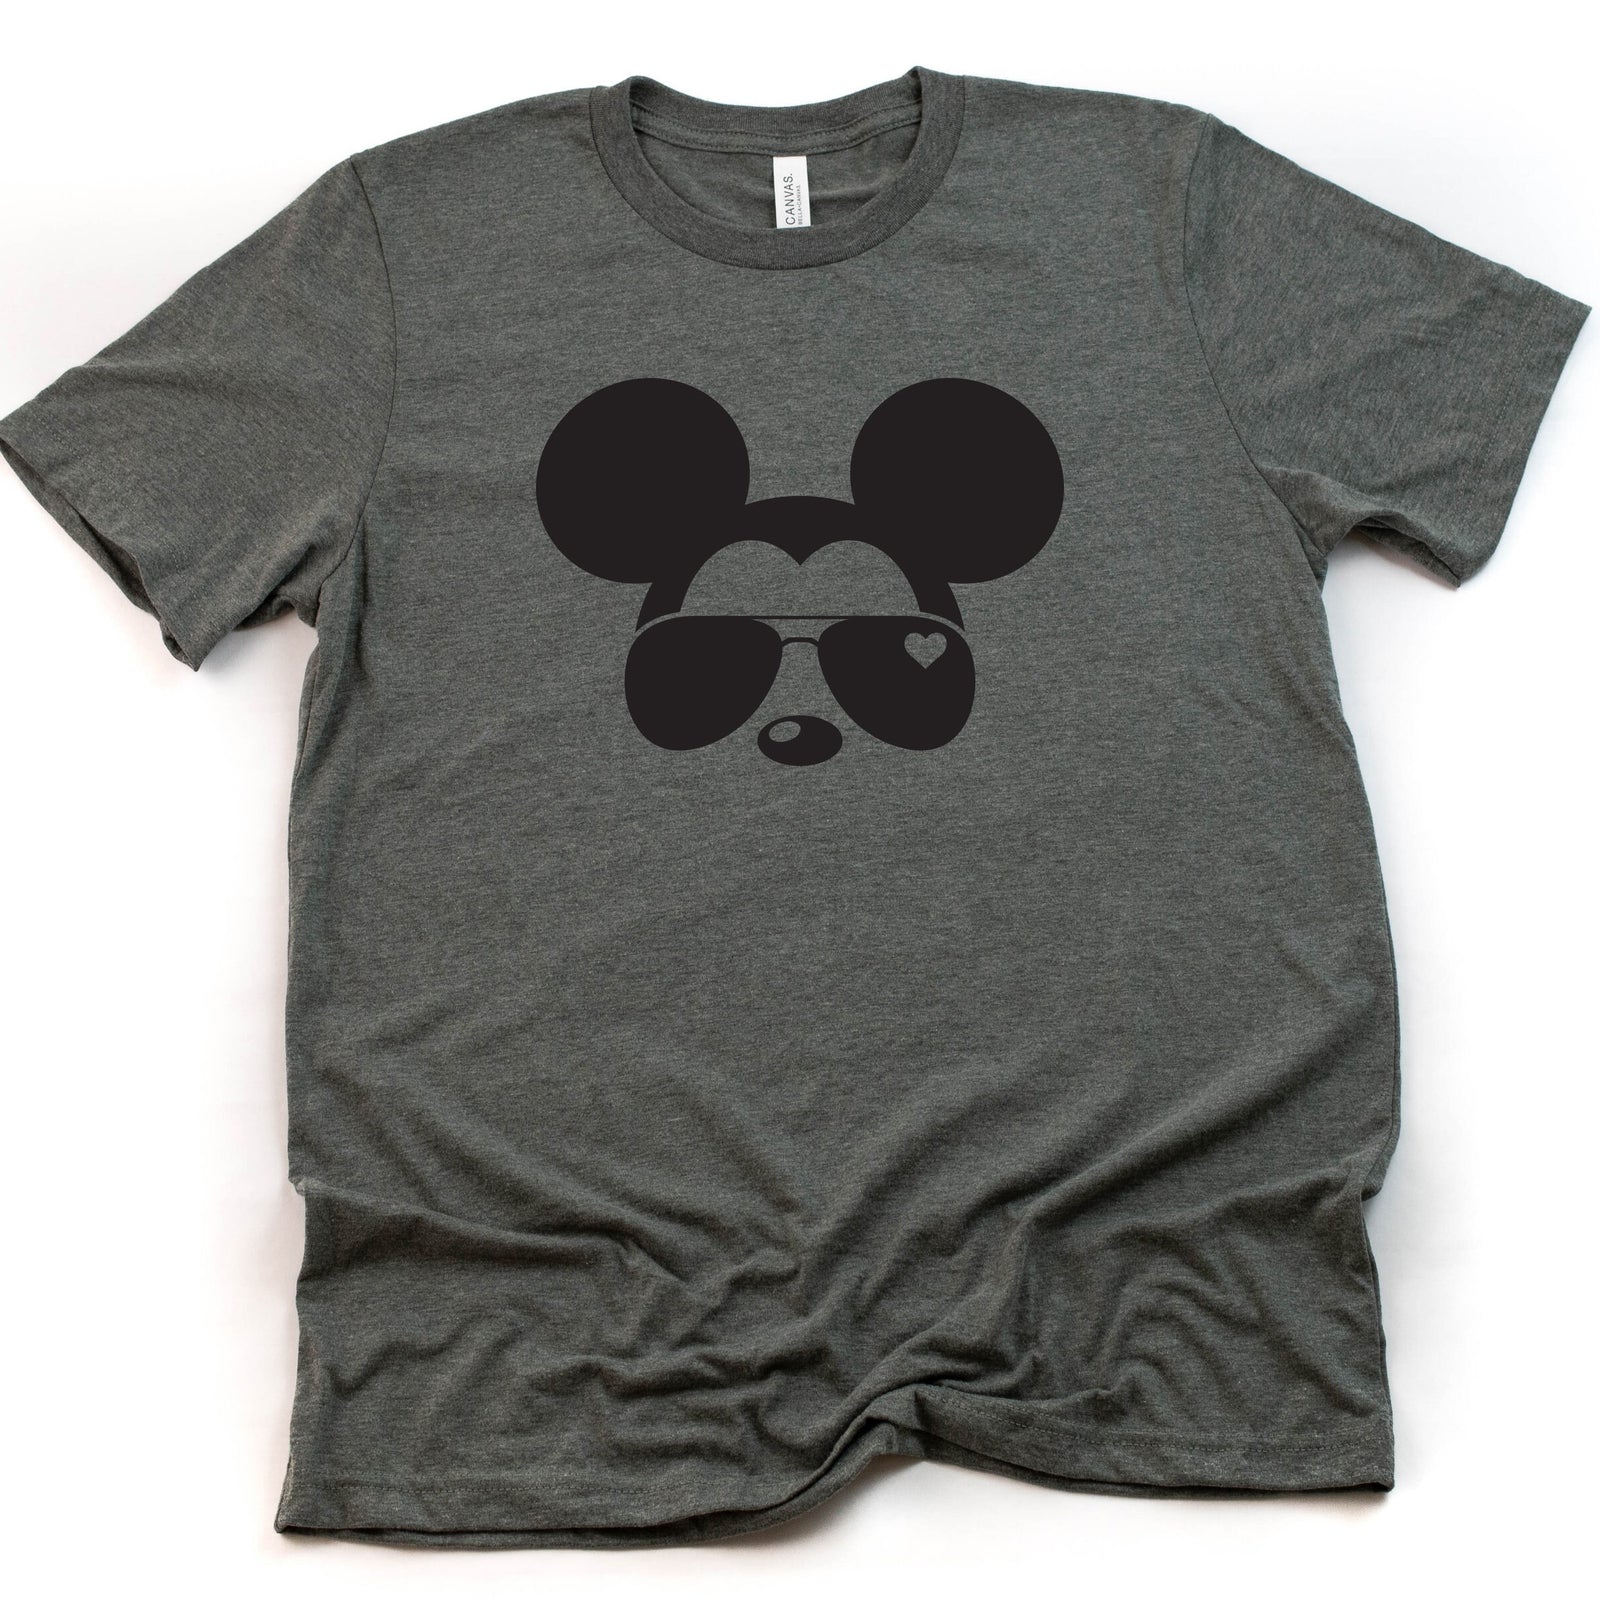 Mickey Aviator t shirt - Disney Trip Matching Shirts - Mickey Mouse T Shirt - Mickey Sunglasses